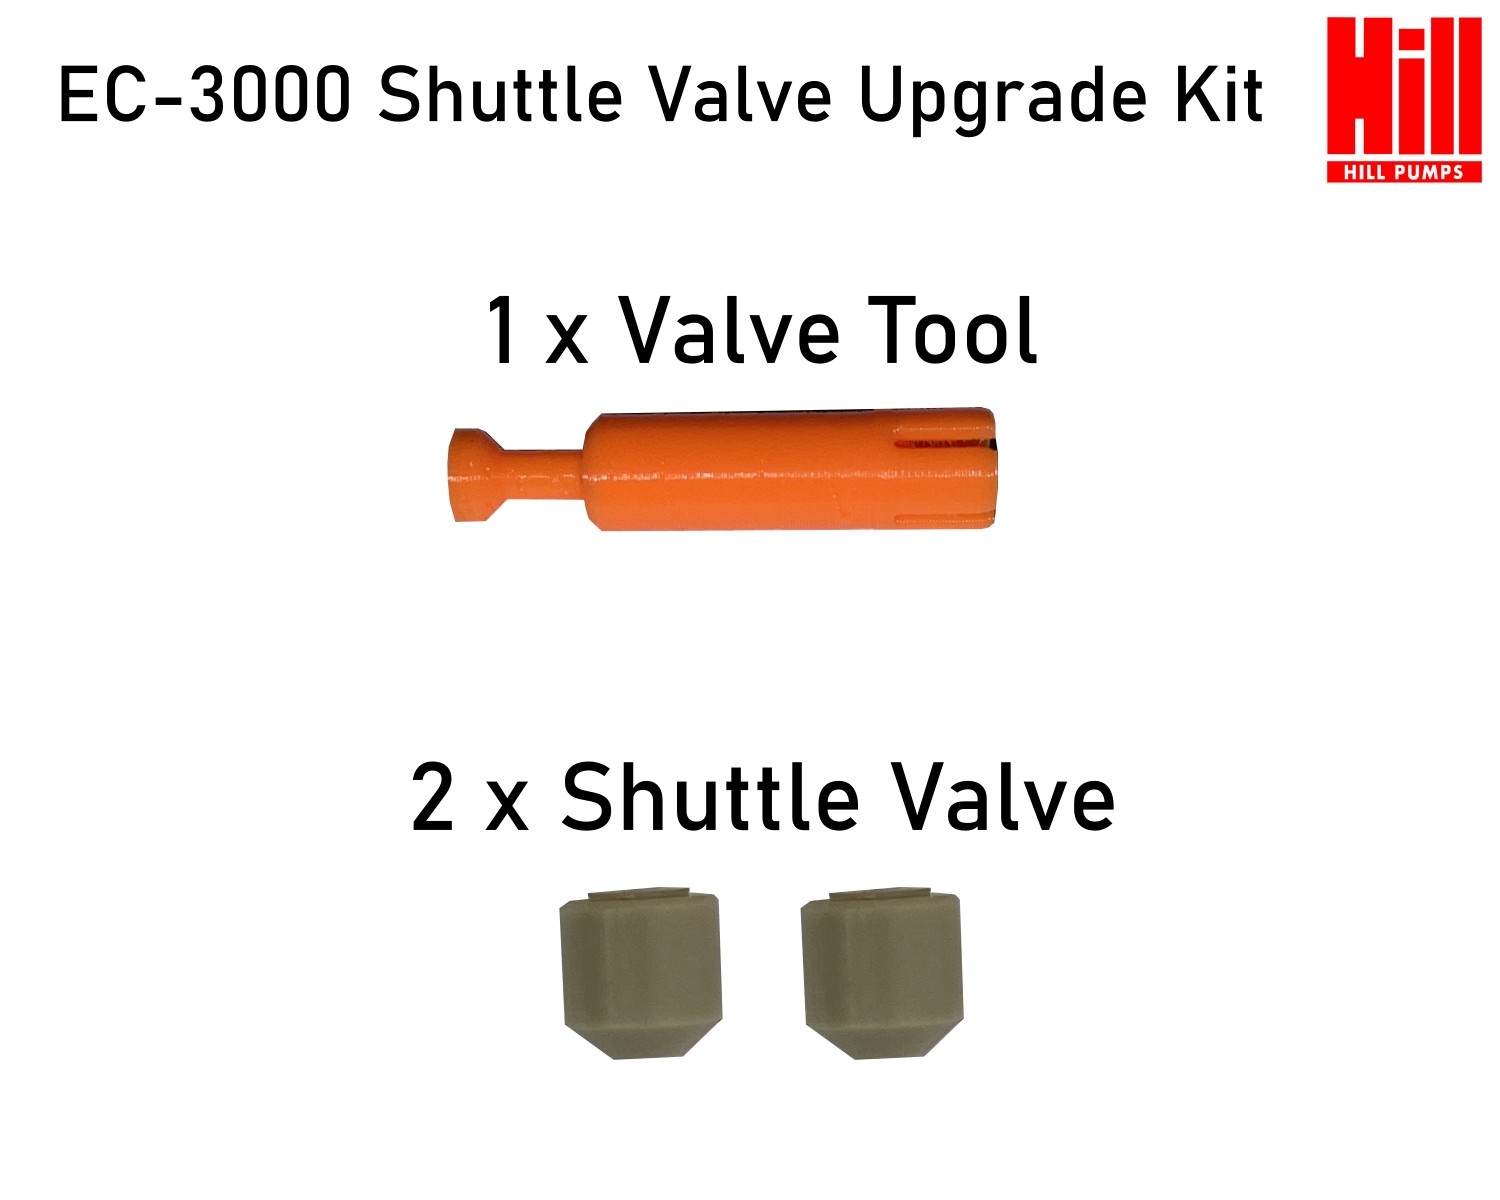 EC-3000 Shuttle Valve Upgrade Kit